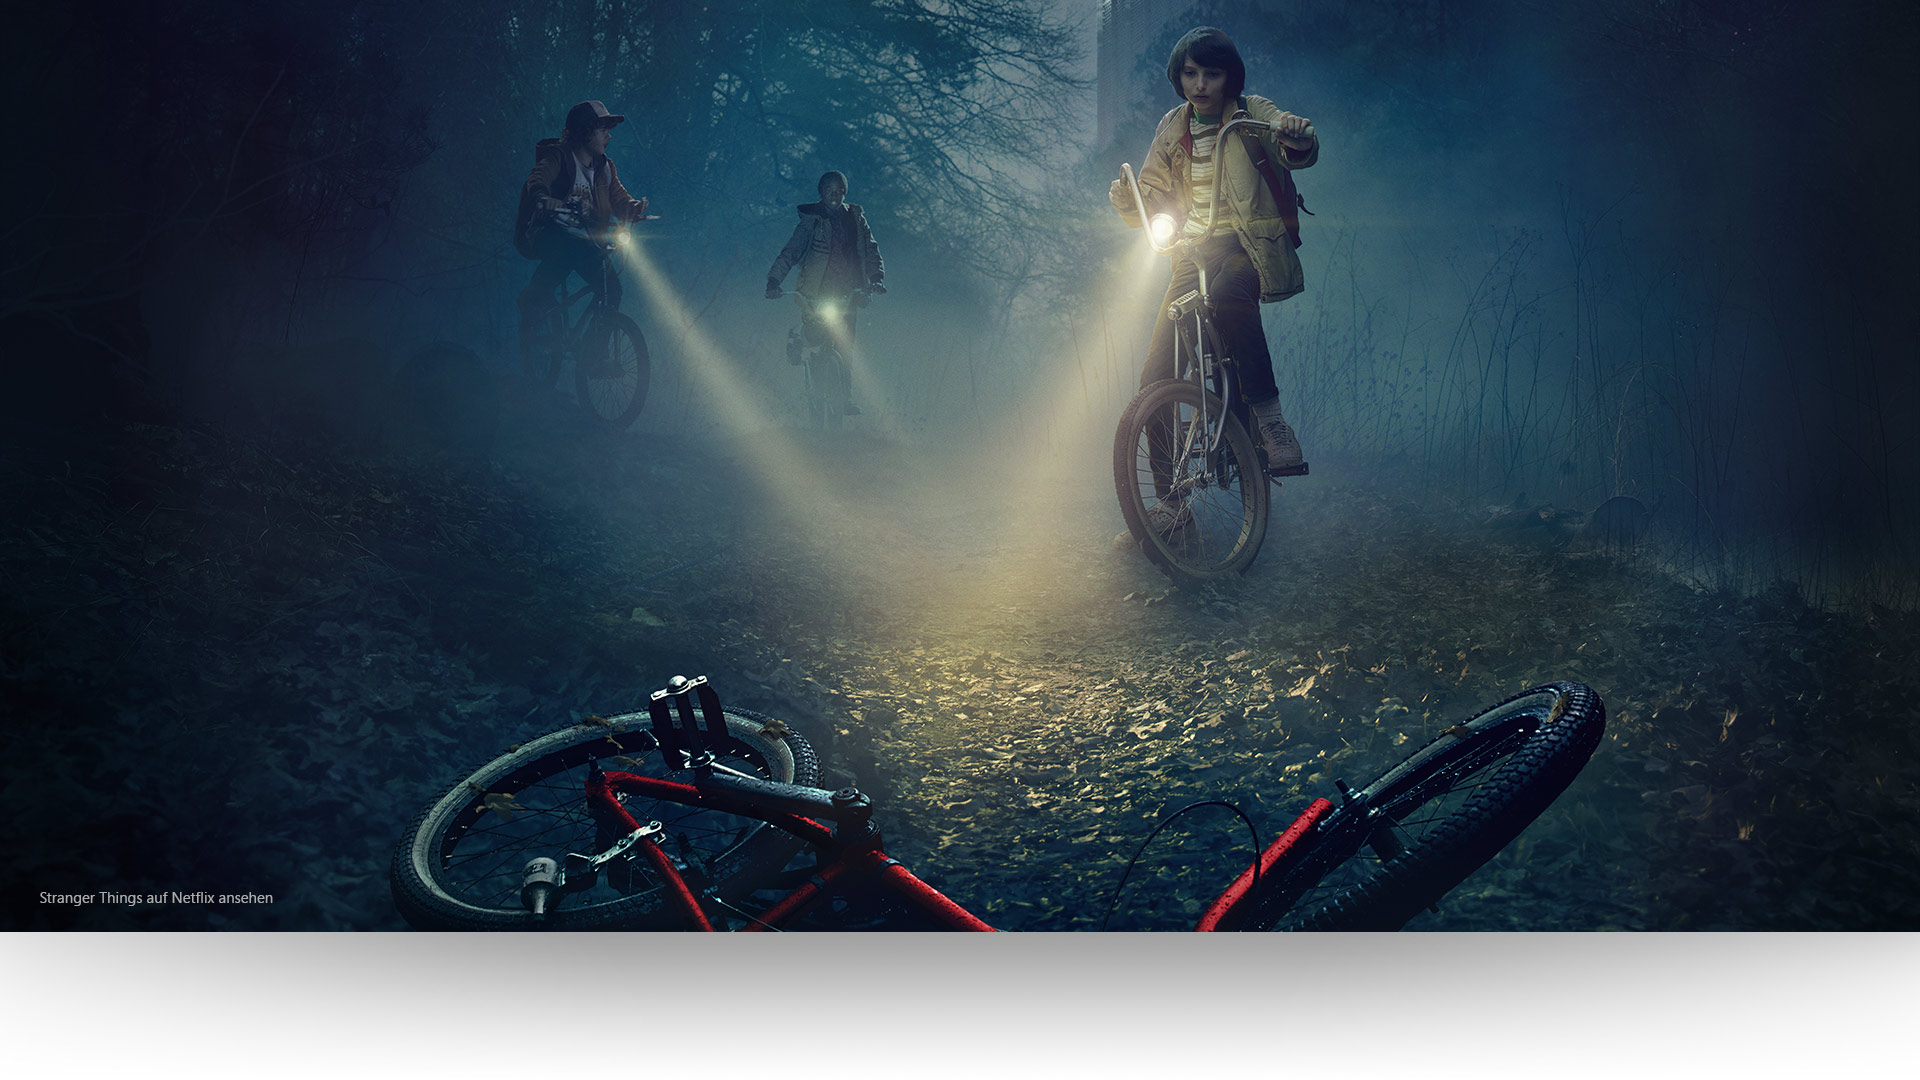 Stranger Things – Dustin, Lucas und Mike richten ihre Lampen auf ein verlassenes Fahrrad auf einem düsteren Waldweg. Stranger Things auf Netflix ansehen.